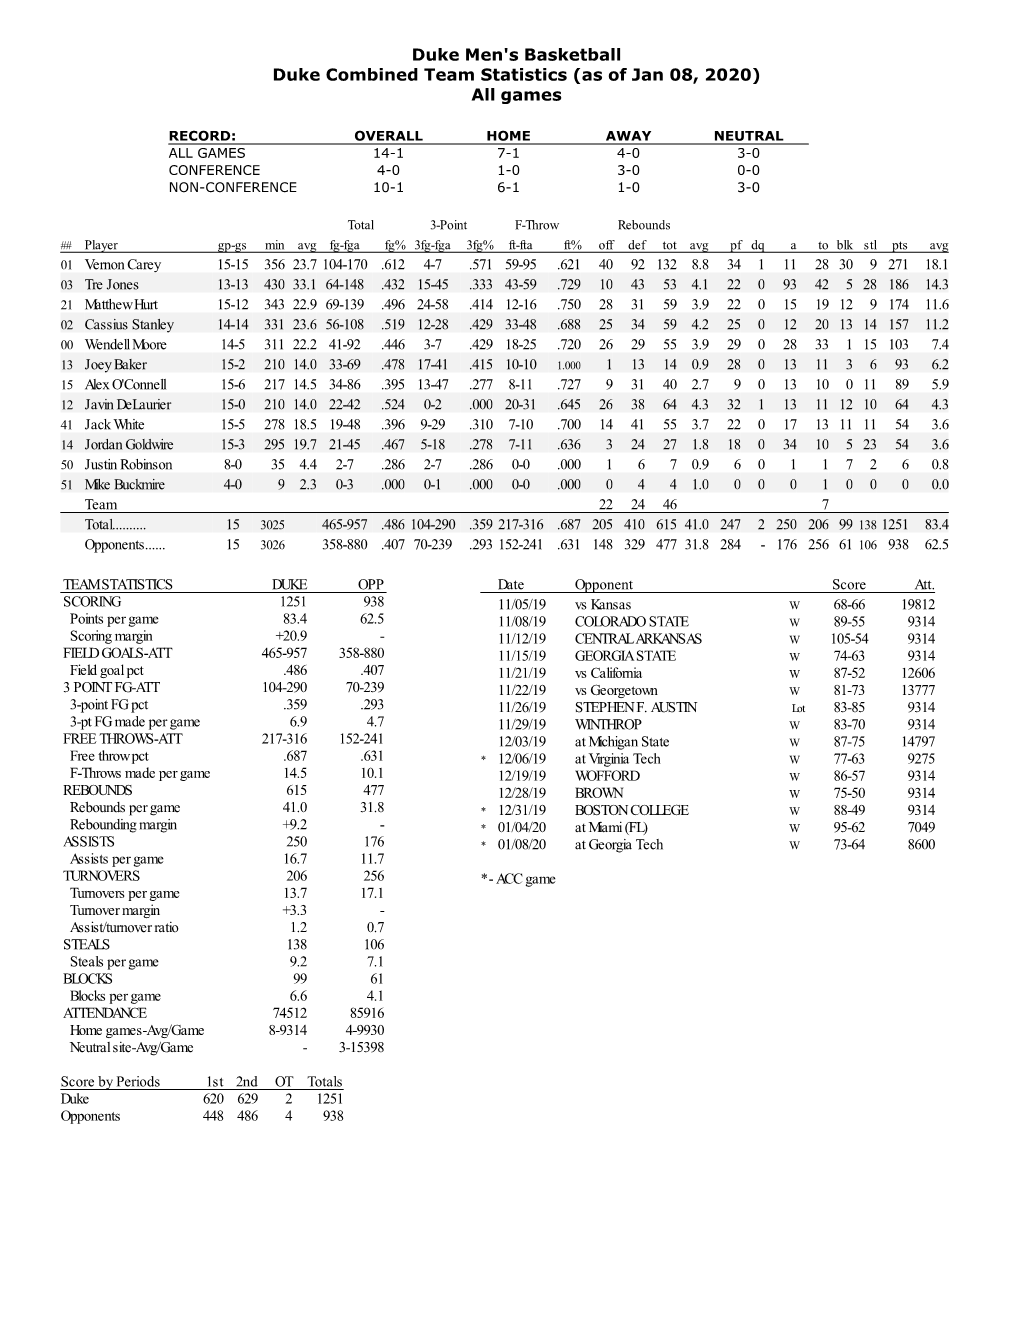 Duke Men's Basketball Duke Combined Team Statistics (As of Jan 08, 2020) All Games